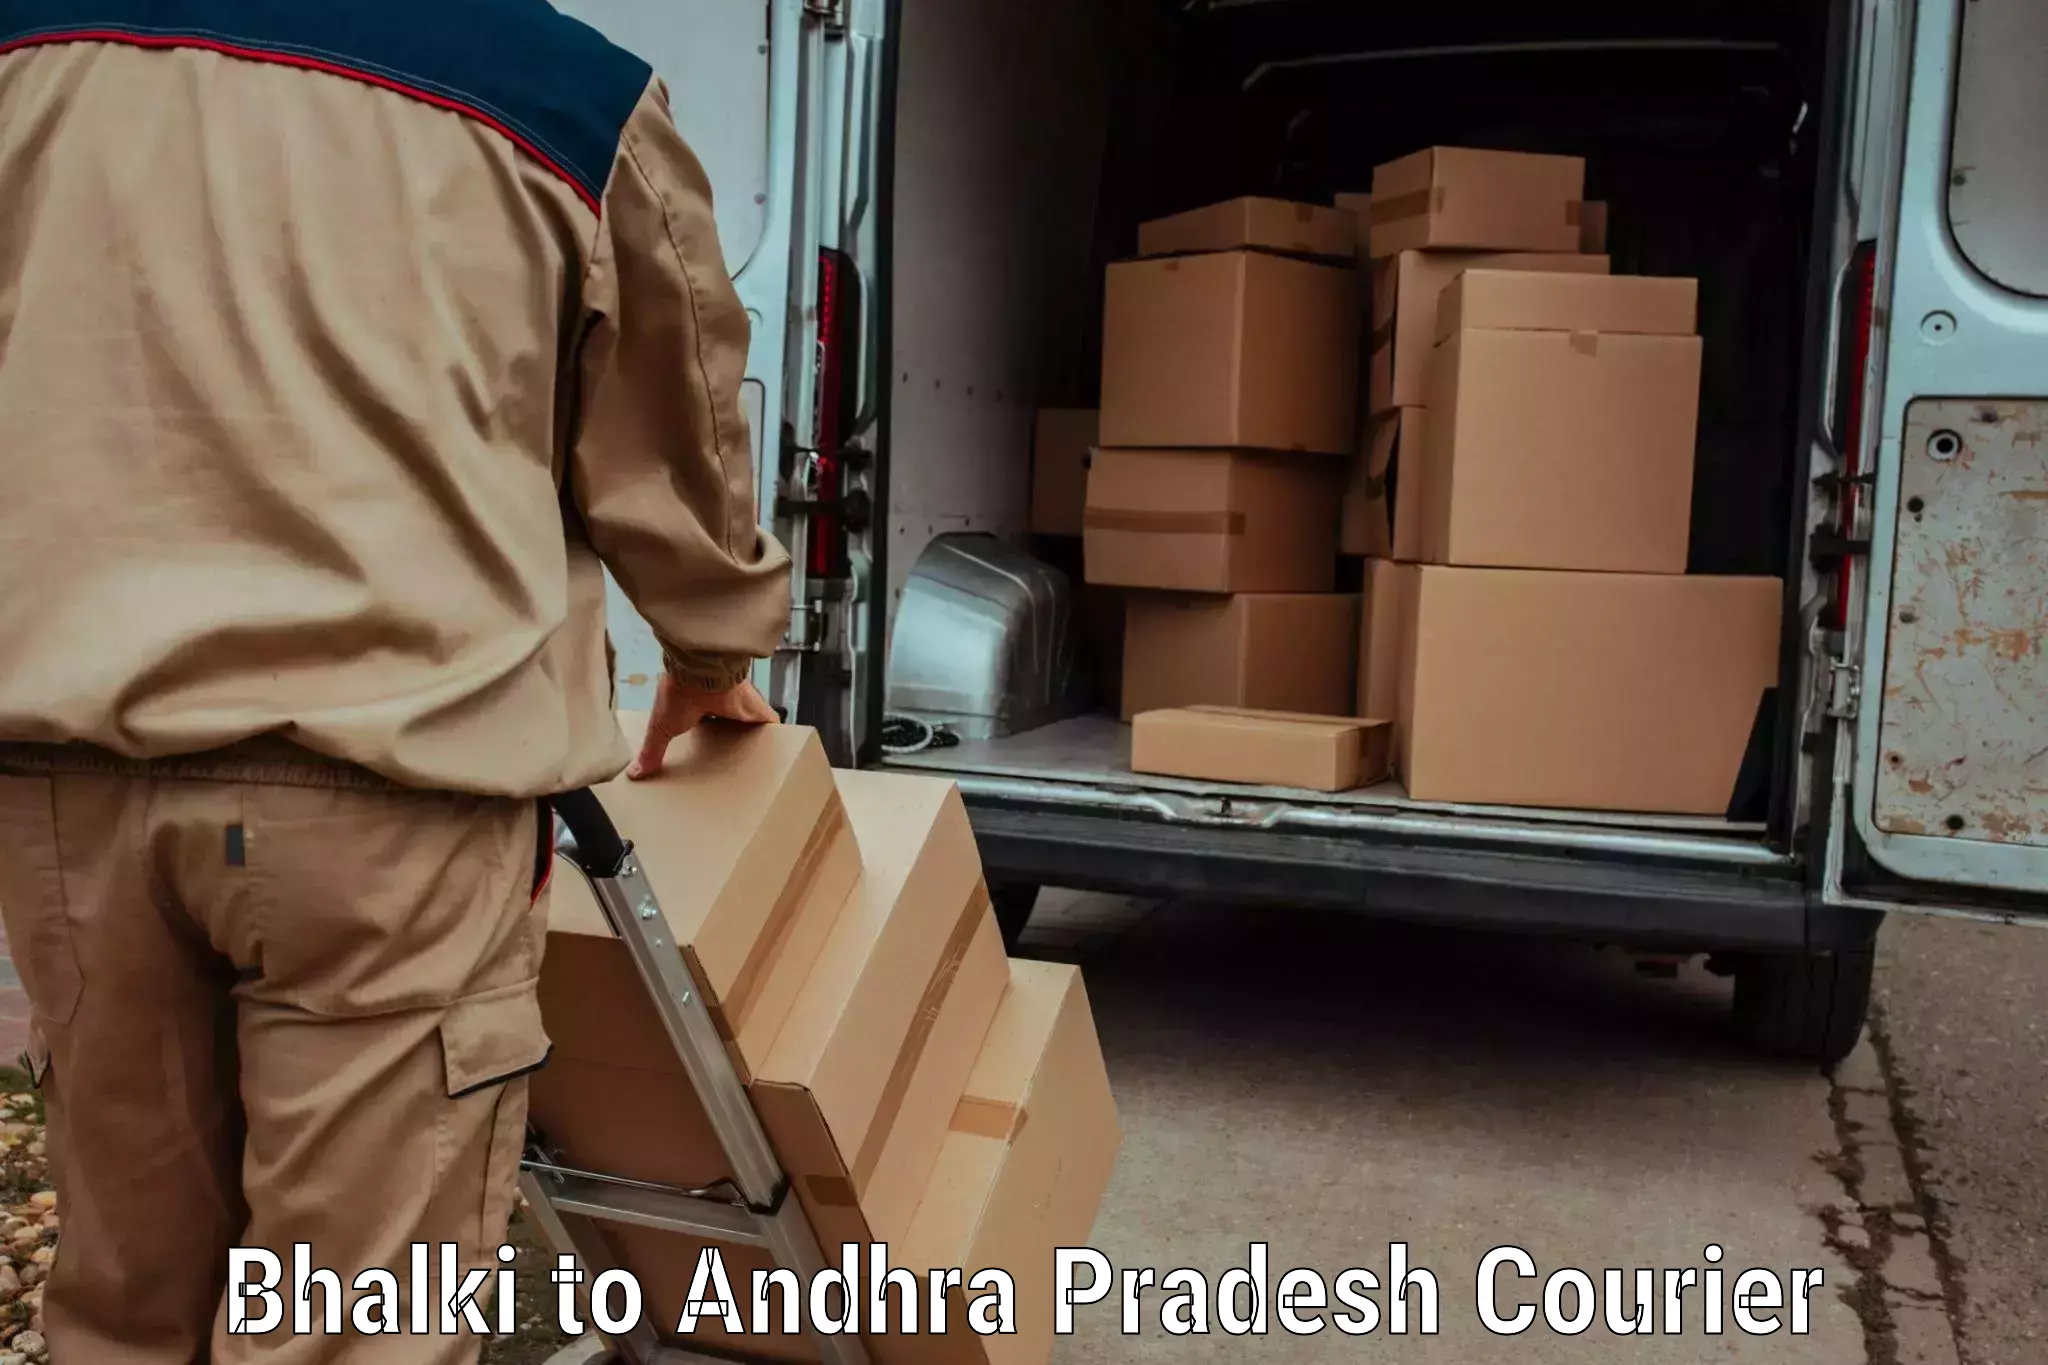 Luggage transit service Bhalki to Andhra Pradesh